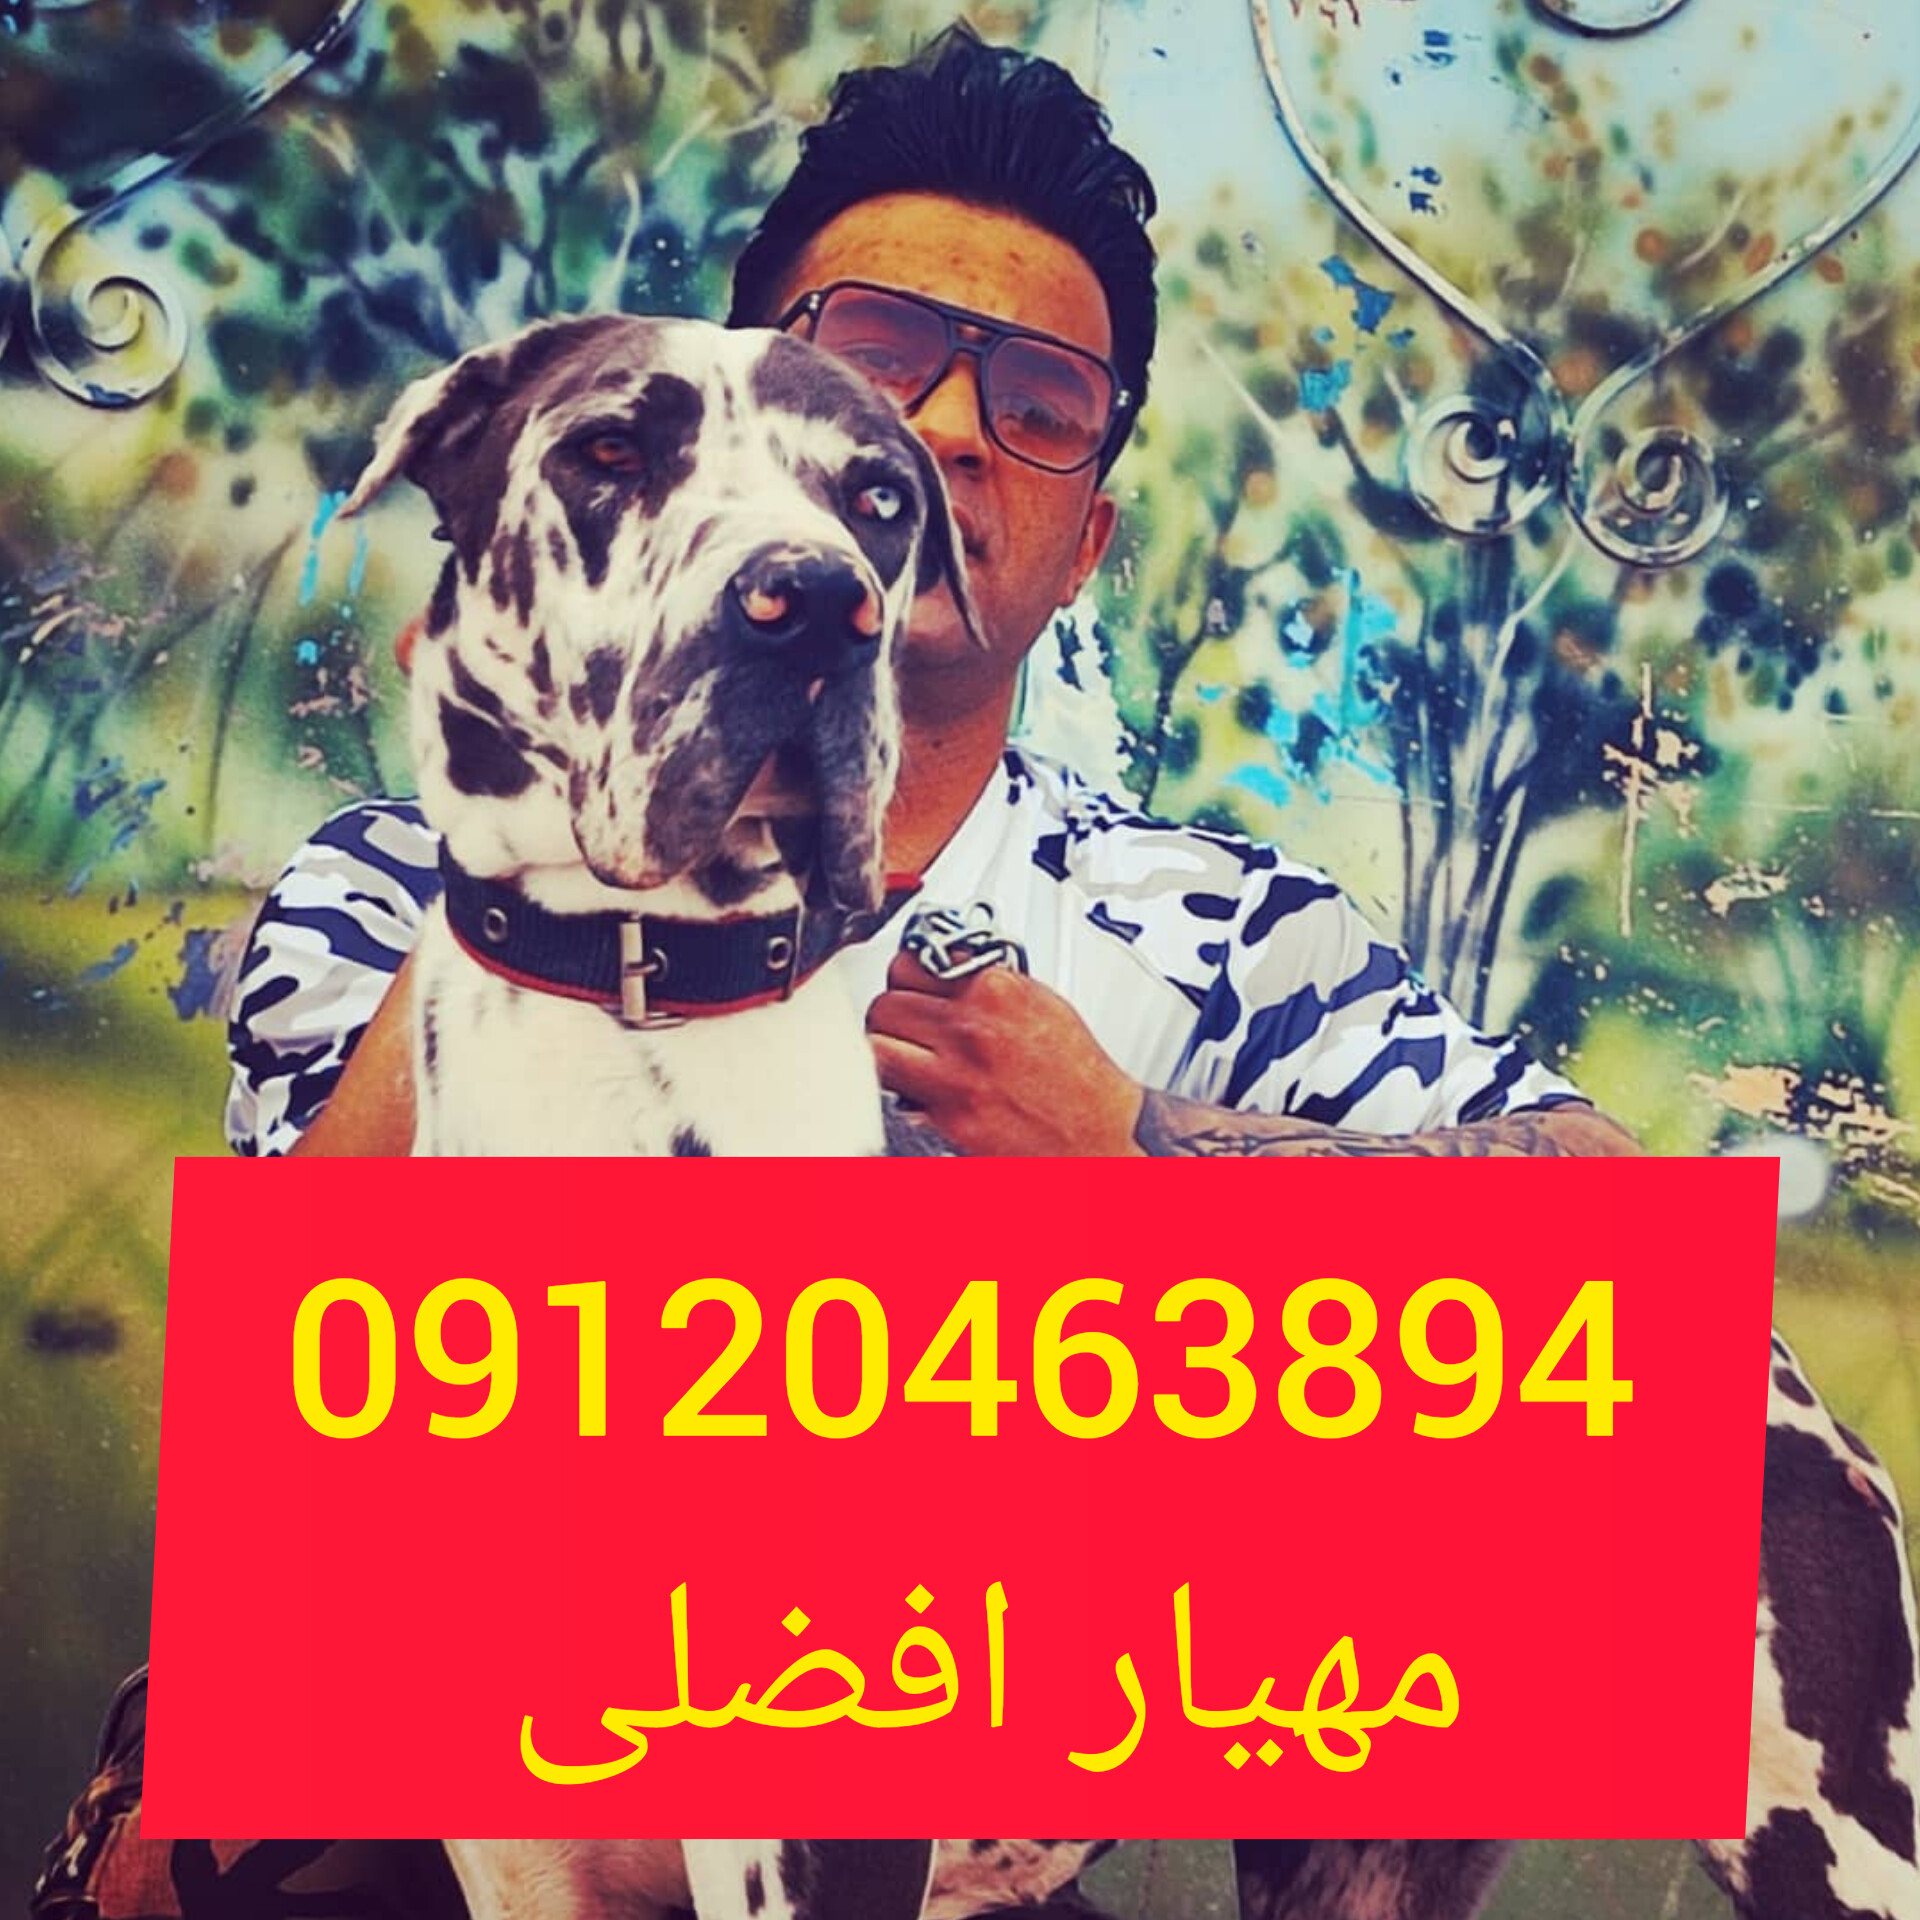 باشگاه سگ البرز باشگاه سگهای نگهبان